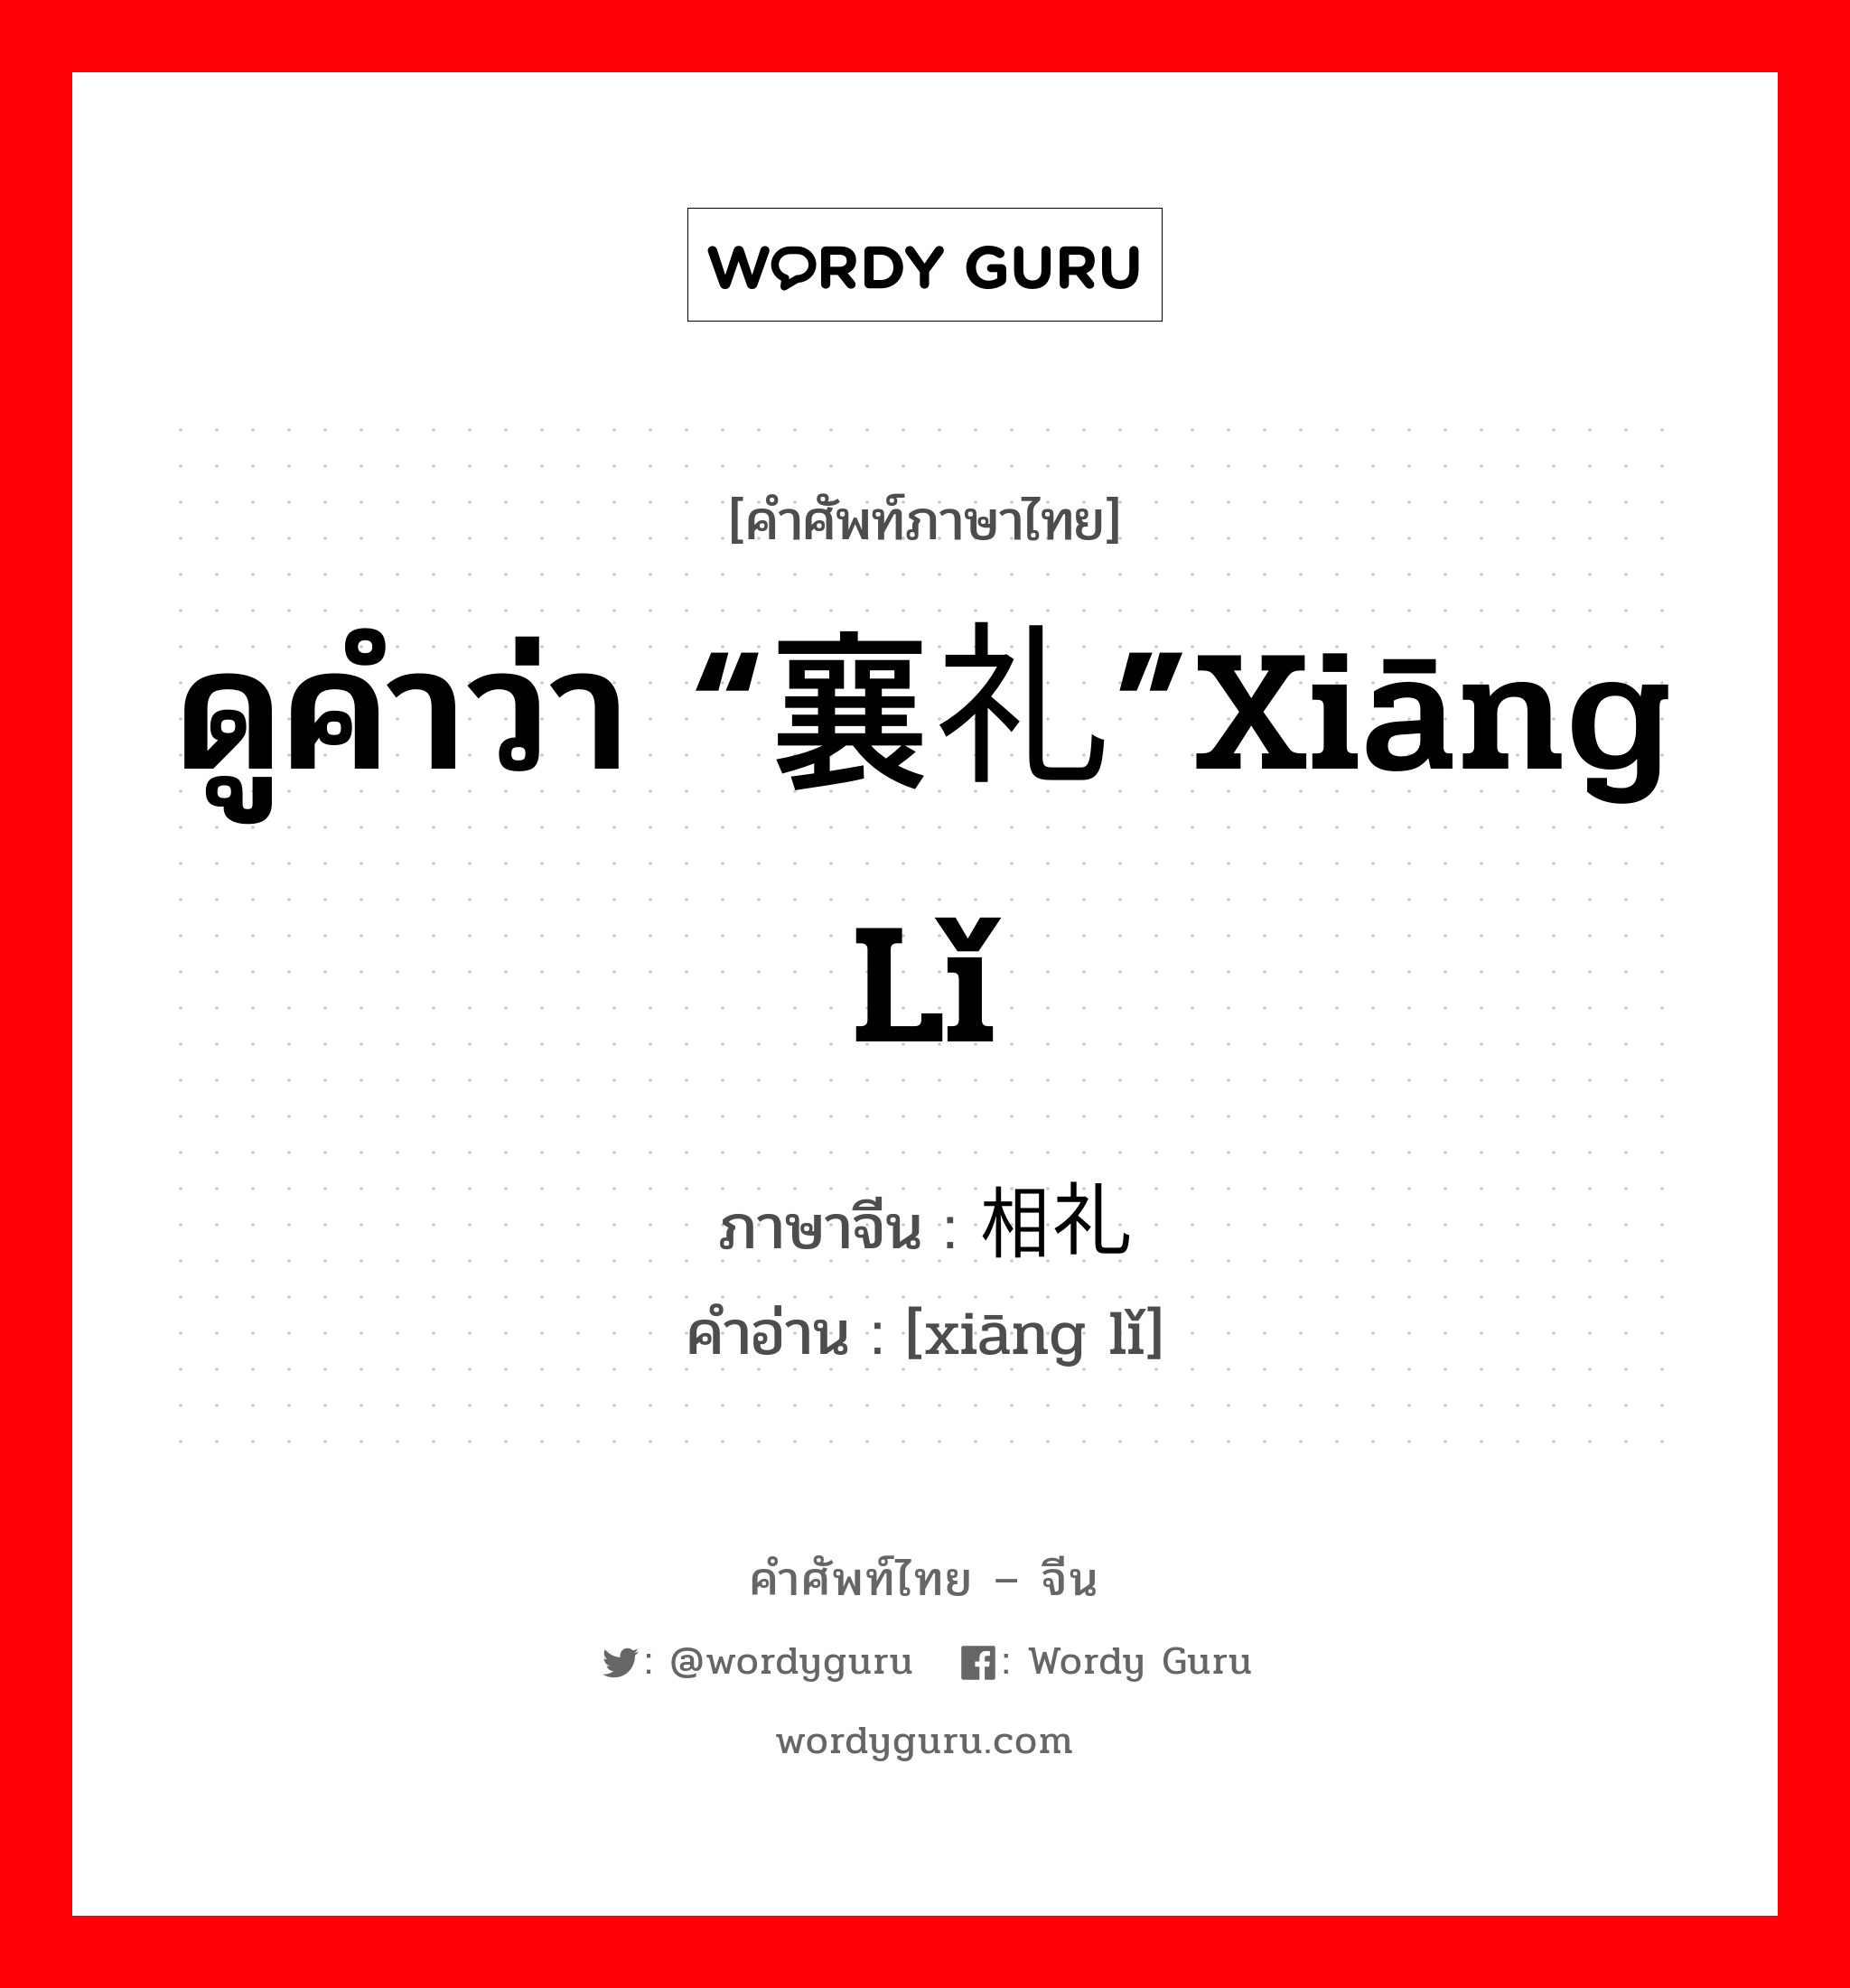 ดูคำว่า “襄礼”xiāng lǐ ภาษาจีนคืออะไร, คำศัพท์ภาษาไทย - จีน ดูคำว่า “襄礼”xiāng lǐ ภาษาจีน 相礼 คำอ่าน [xiāng lǐ]